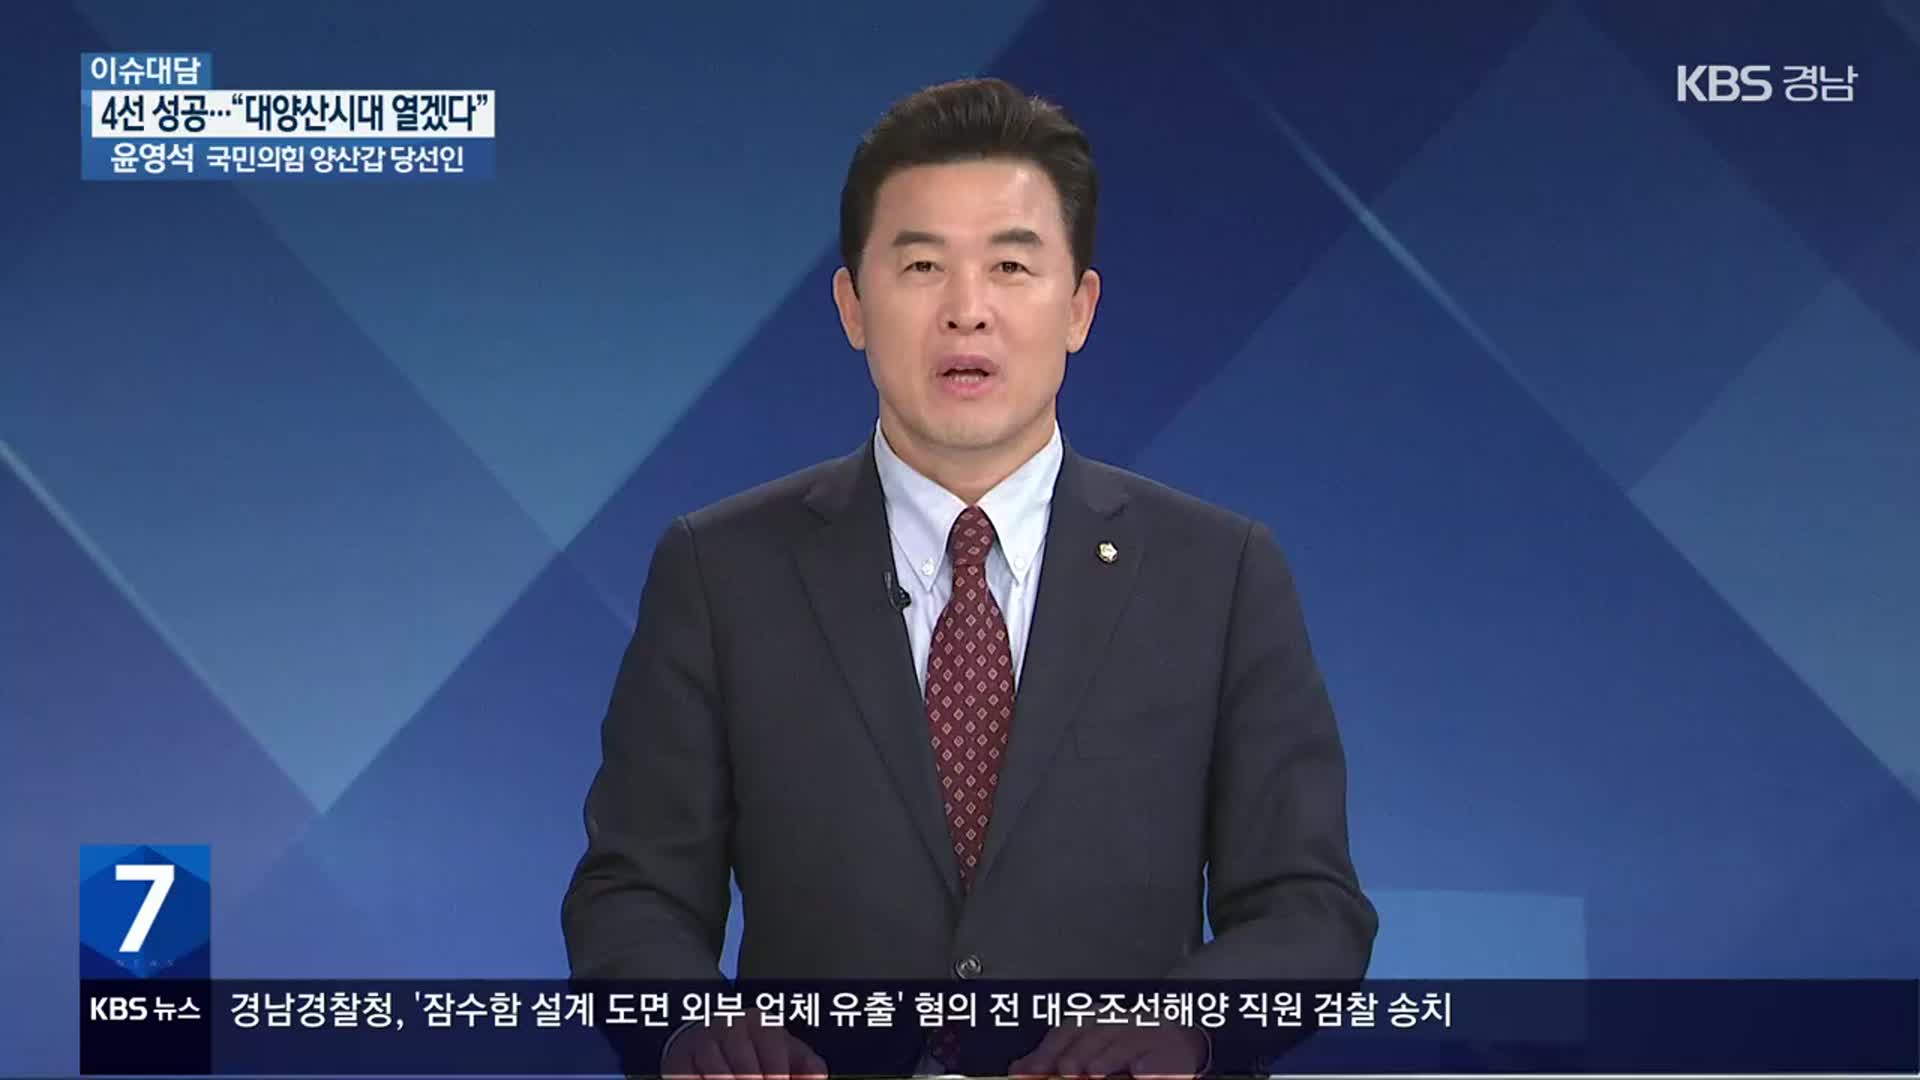 [이슈대담] ‘4선 성공’ 양산갑 윤영석 당선인 “대양산시대 열겠다”